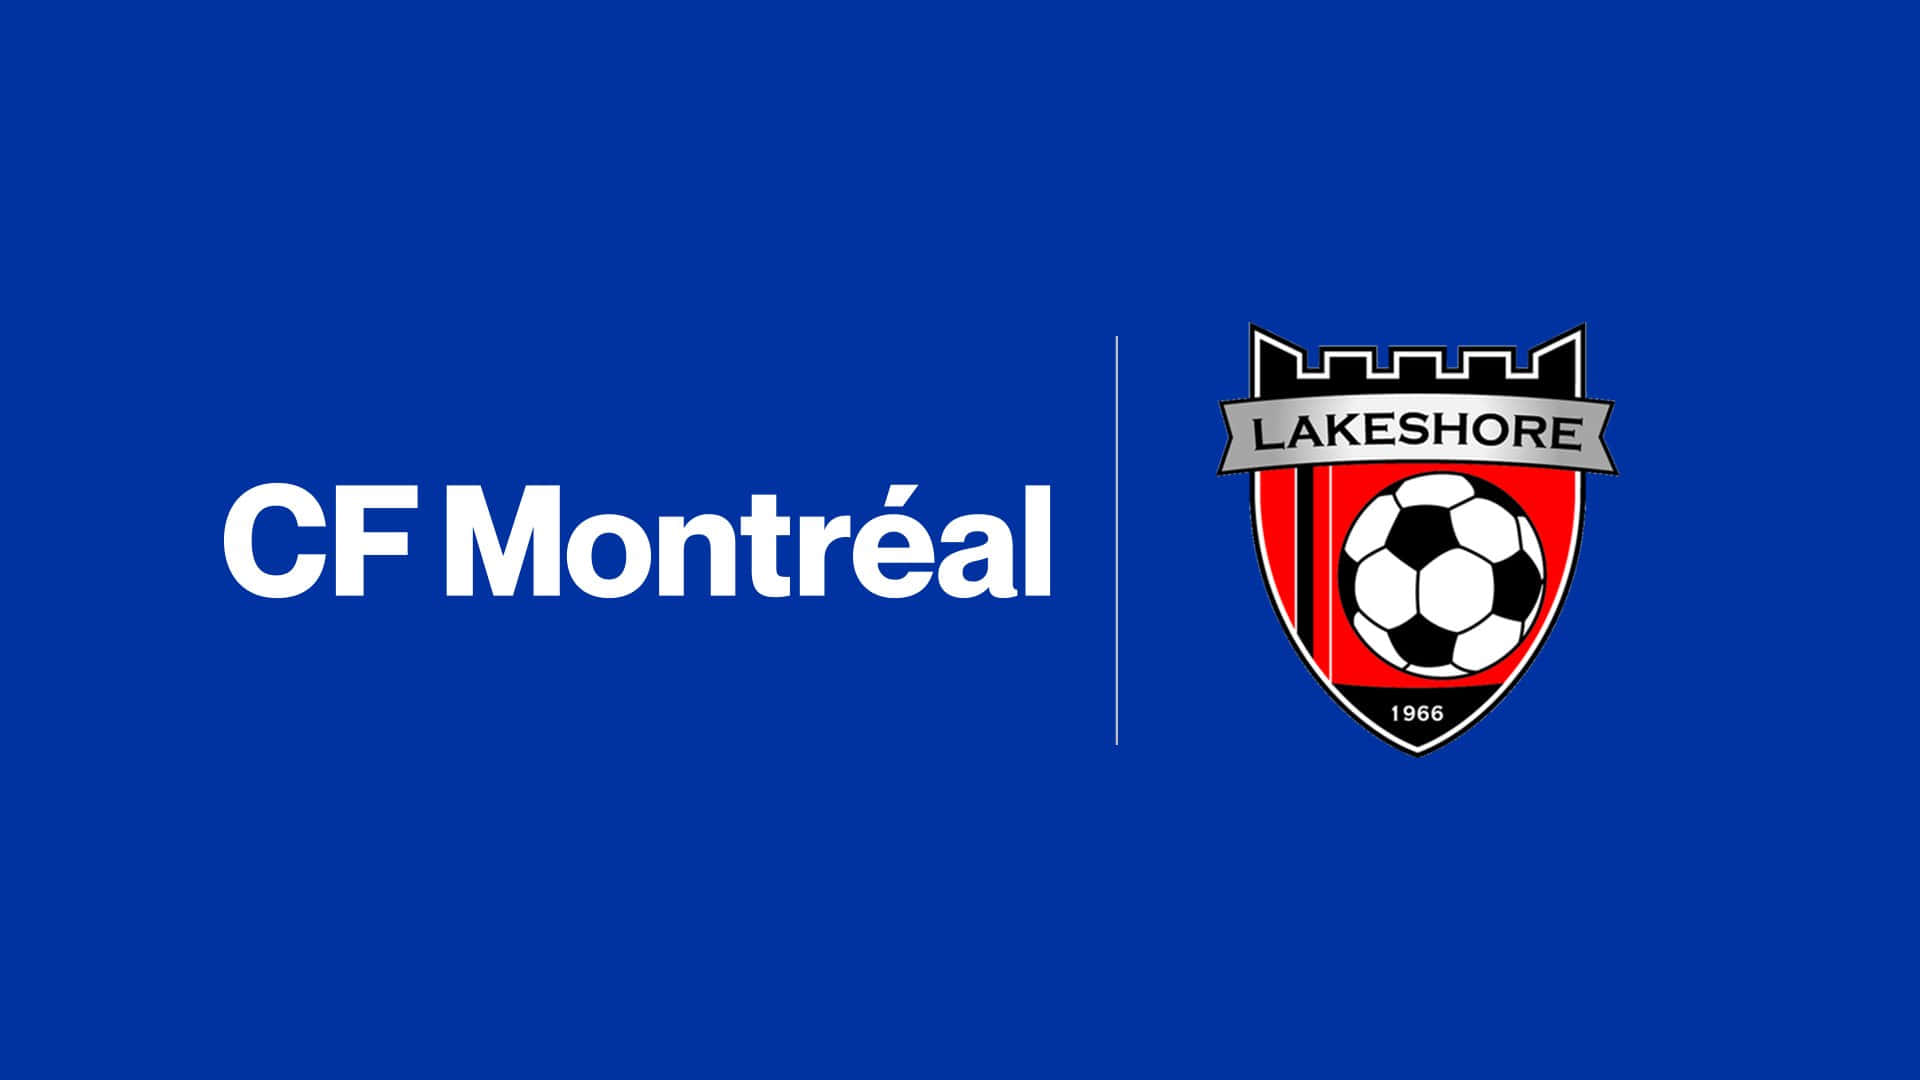 Lasquadra Di Calcio Del Cf Montreal Si Allena Al Campo Del Lakeshore Sc. Sfondo